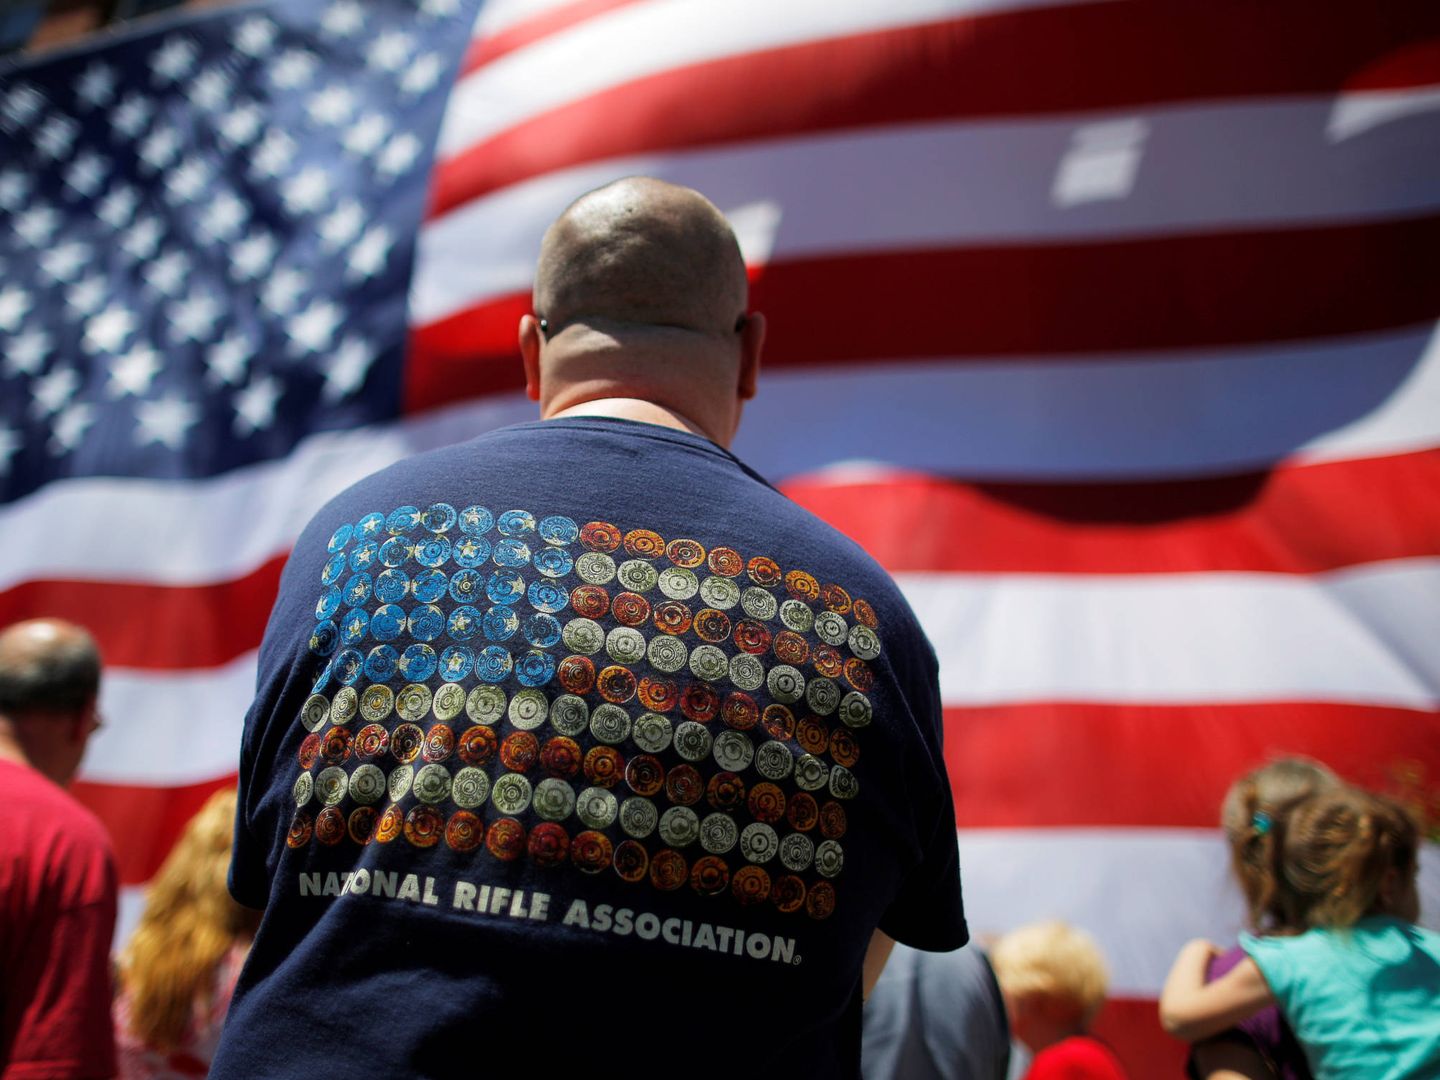 Un estadounidense con una camiseta de la NRA durante un evento en Manchester, New Hampshire. (Reuters)